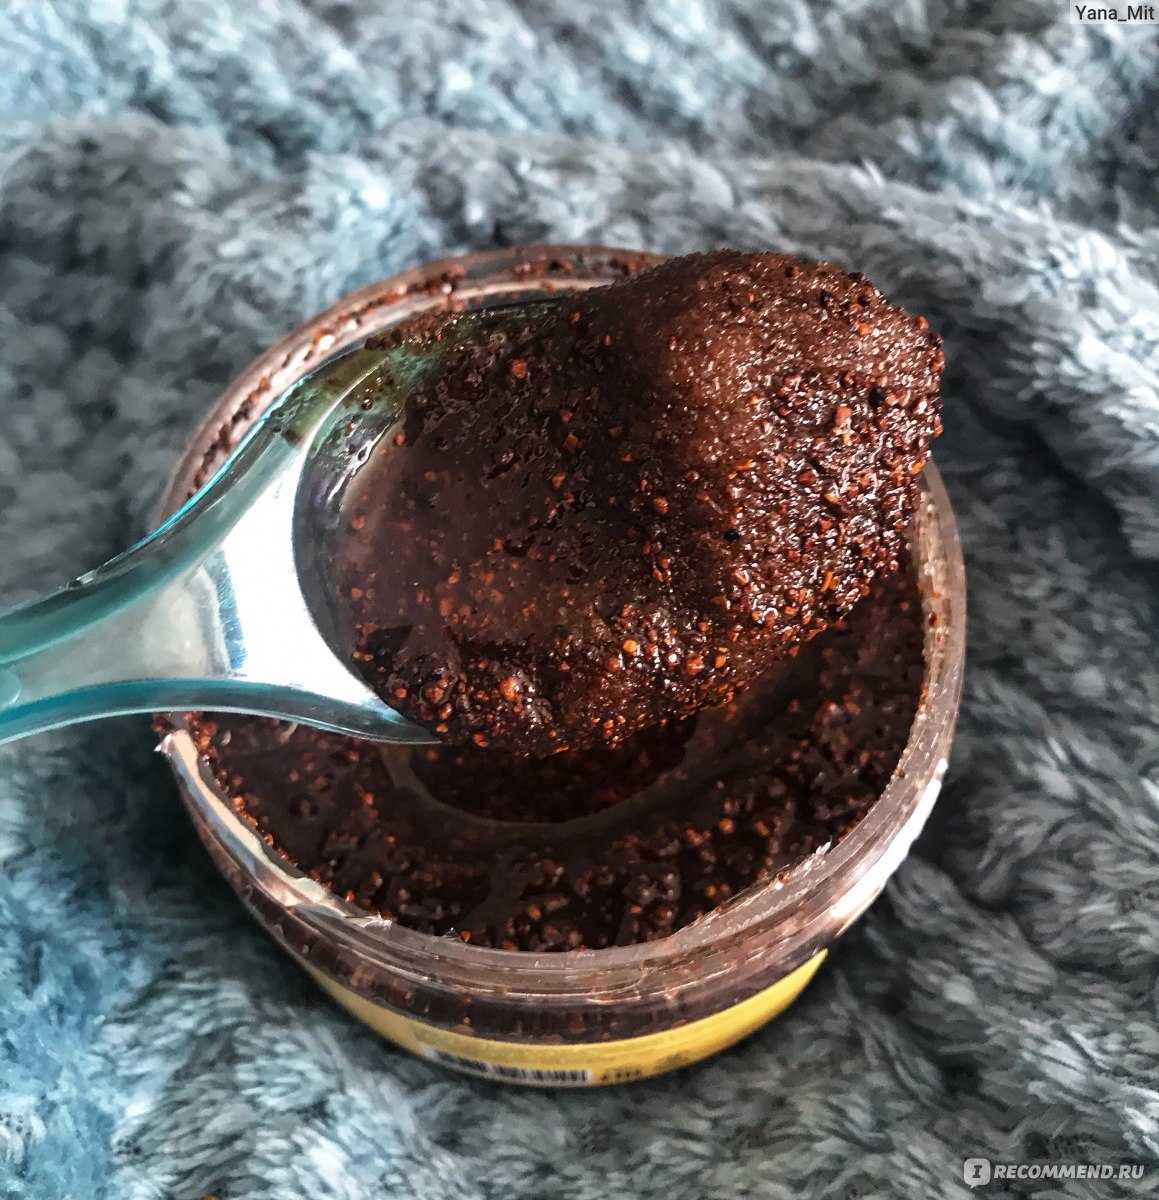 Скраб из кофейной гущи очень популярен среди средств по уходу за кожей Какой рецепт скраба из кофе самый эффективный Как сделать это средство своими руками в домашних условиях